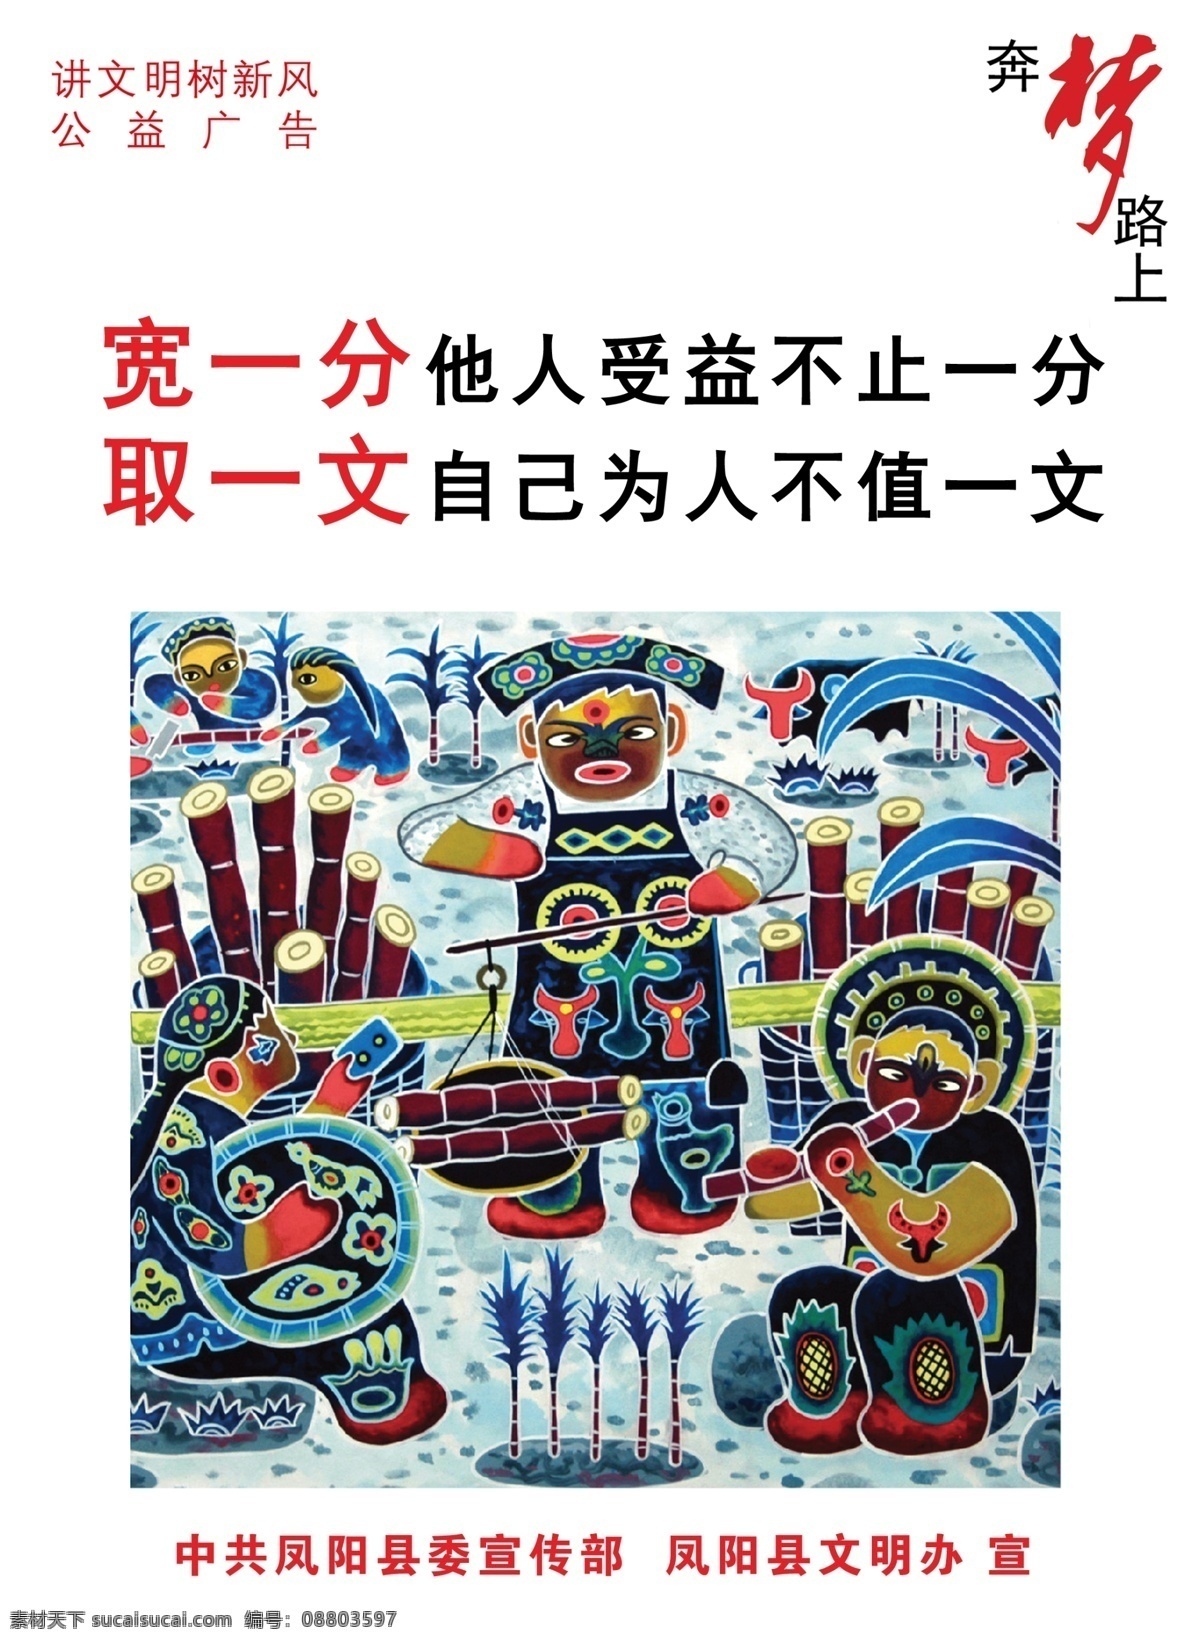 中国梦海报 中国梦 梦 宣传 标语 文明 公益 广告 彩色 道化师 广告设计模板 源文件